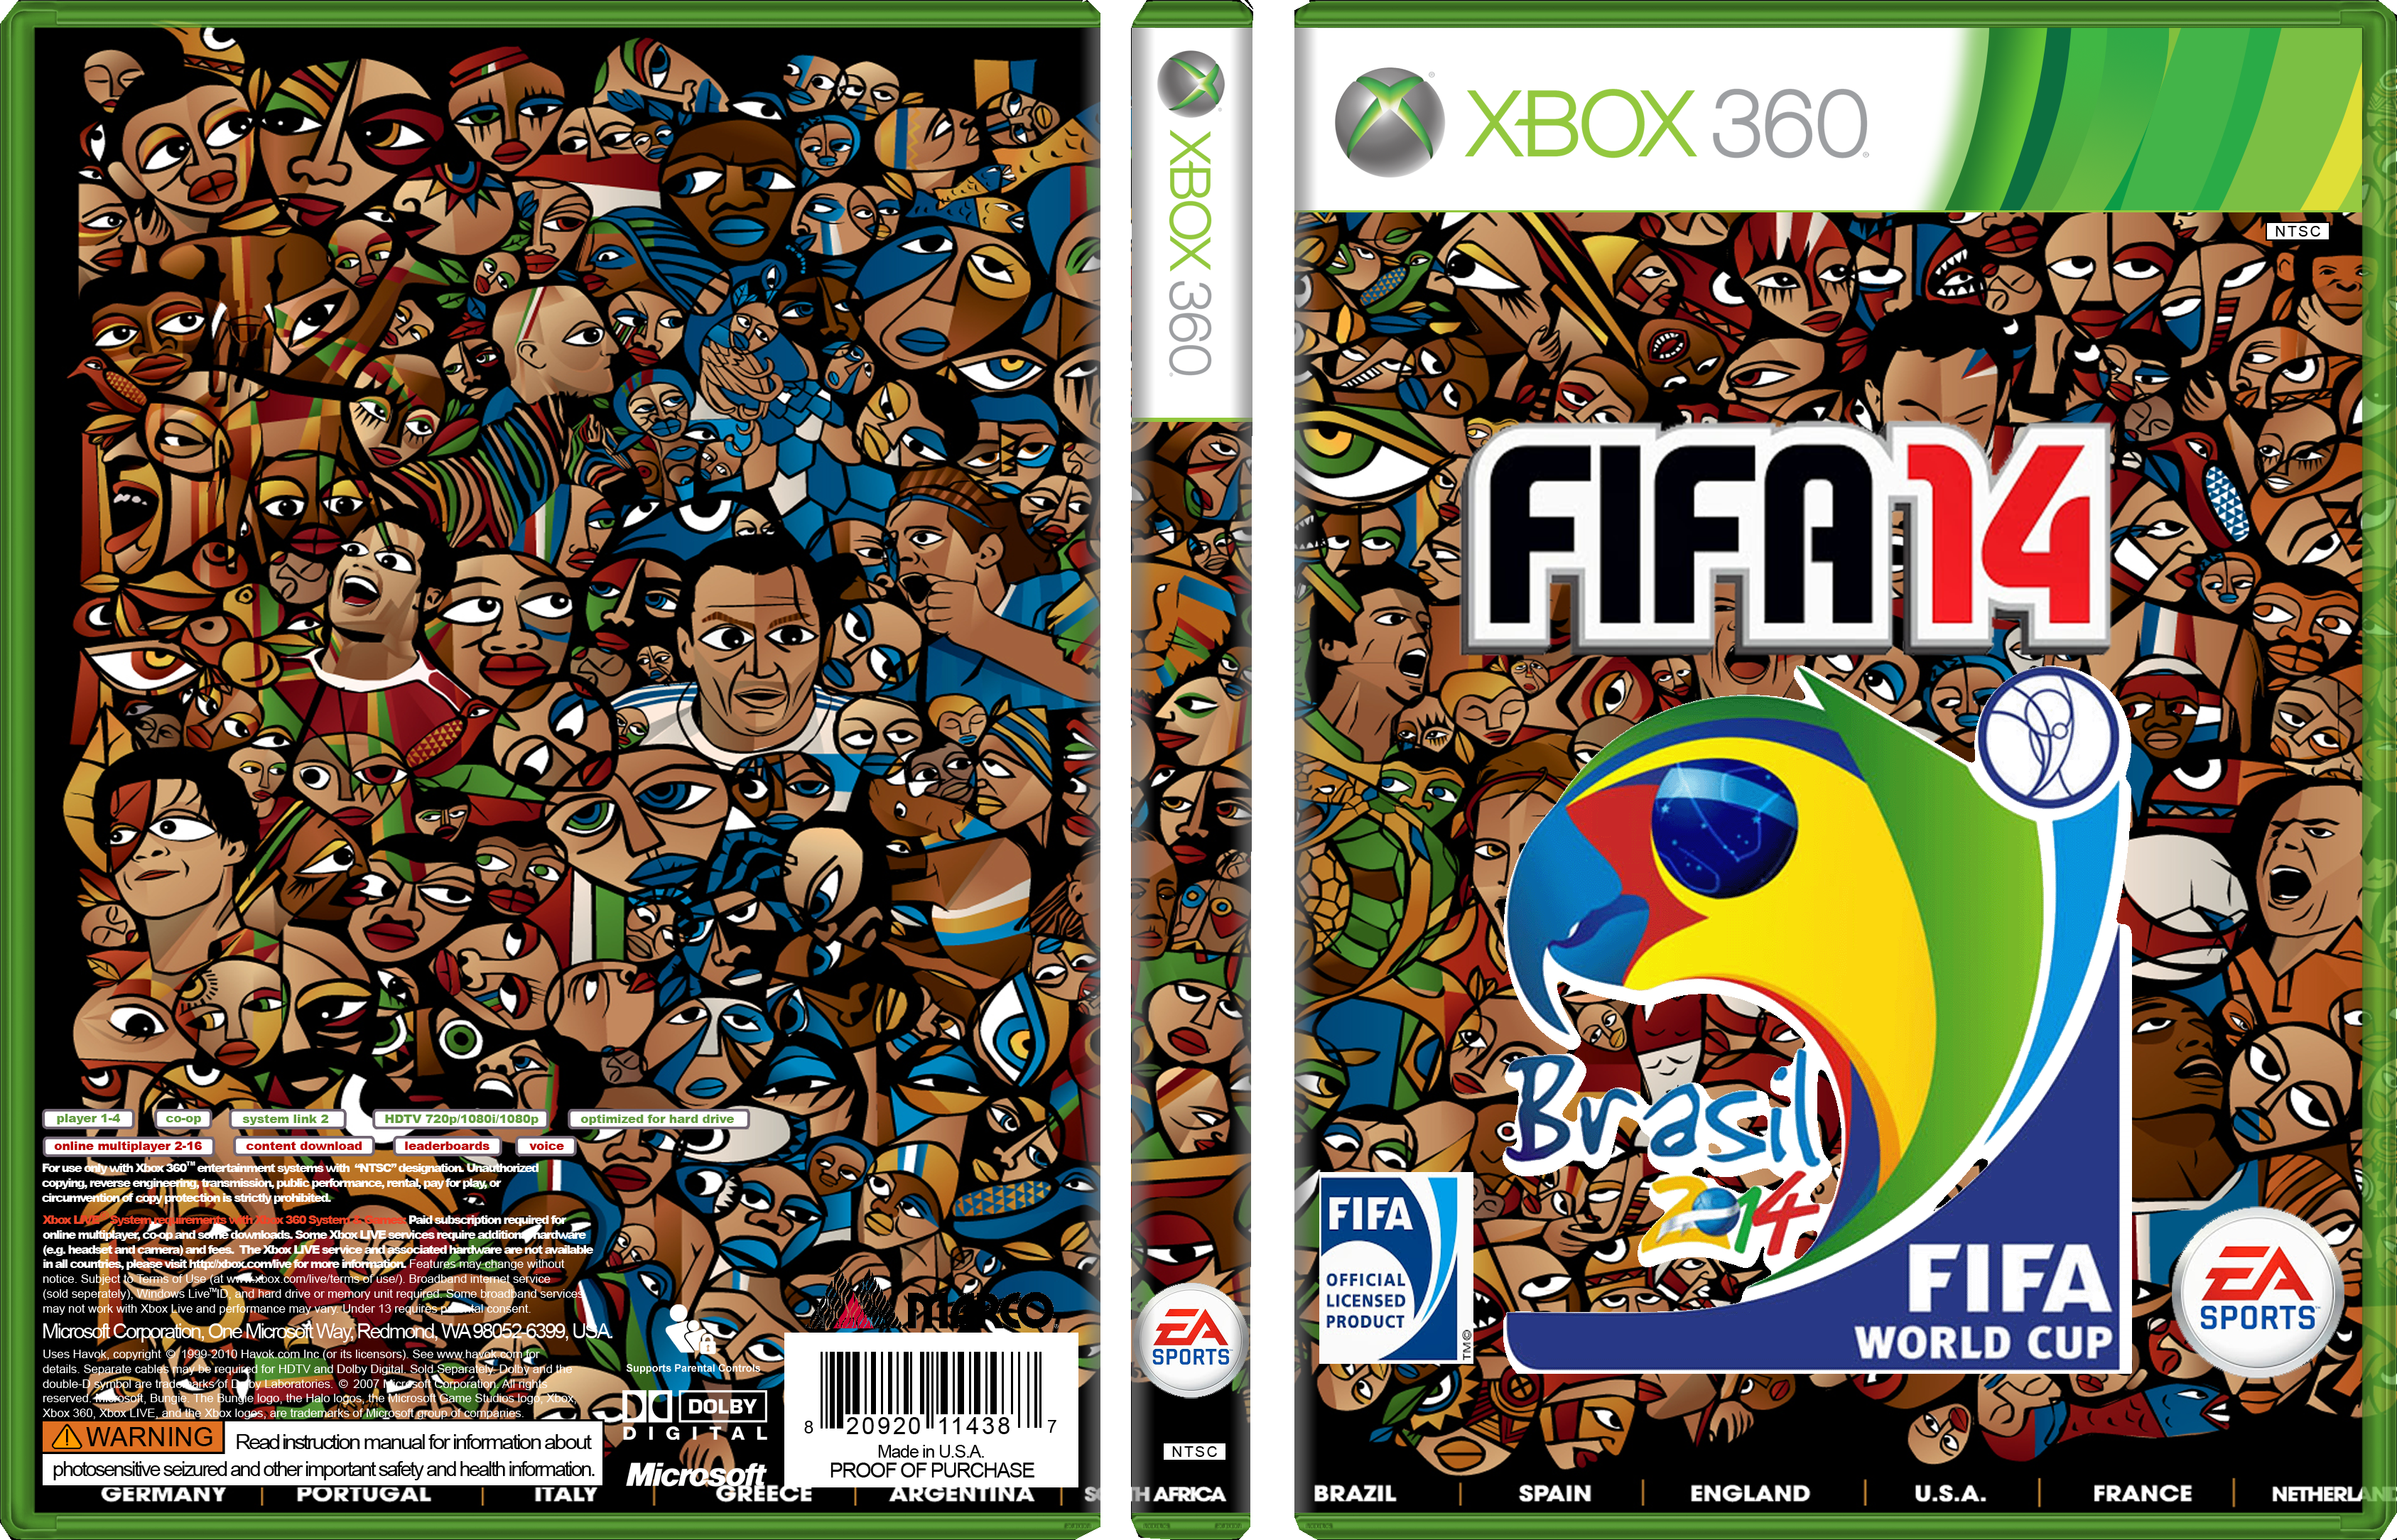 2014 Brazil Fifa World Cup box cover